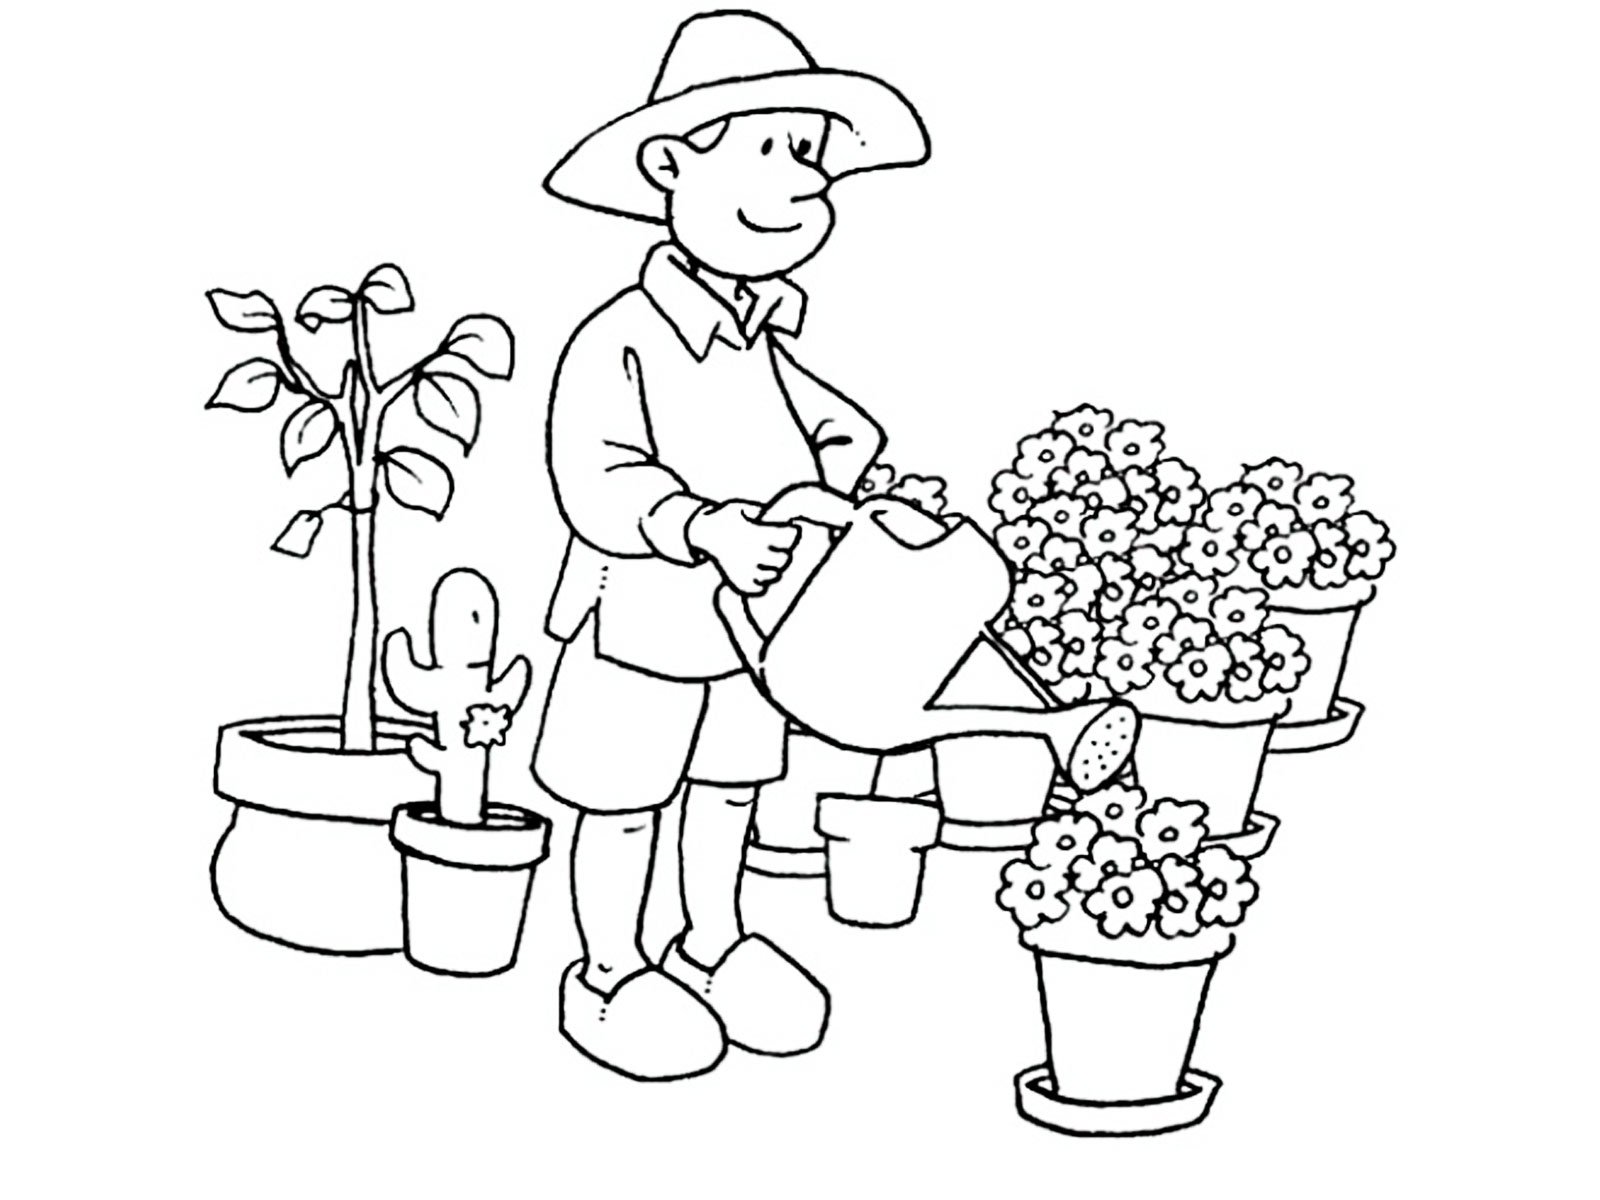 Children's gardener #23